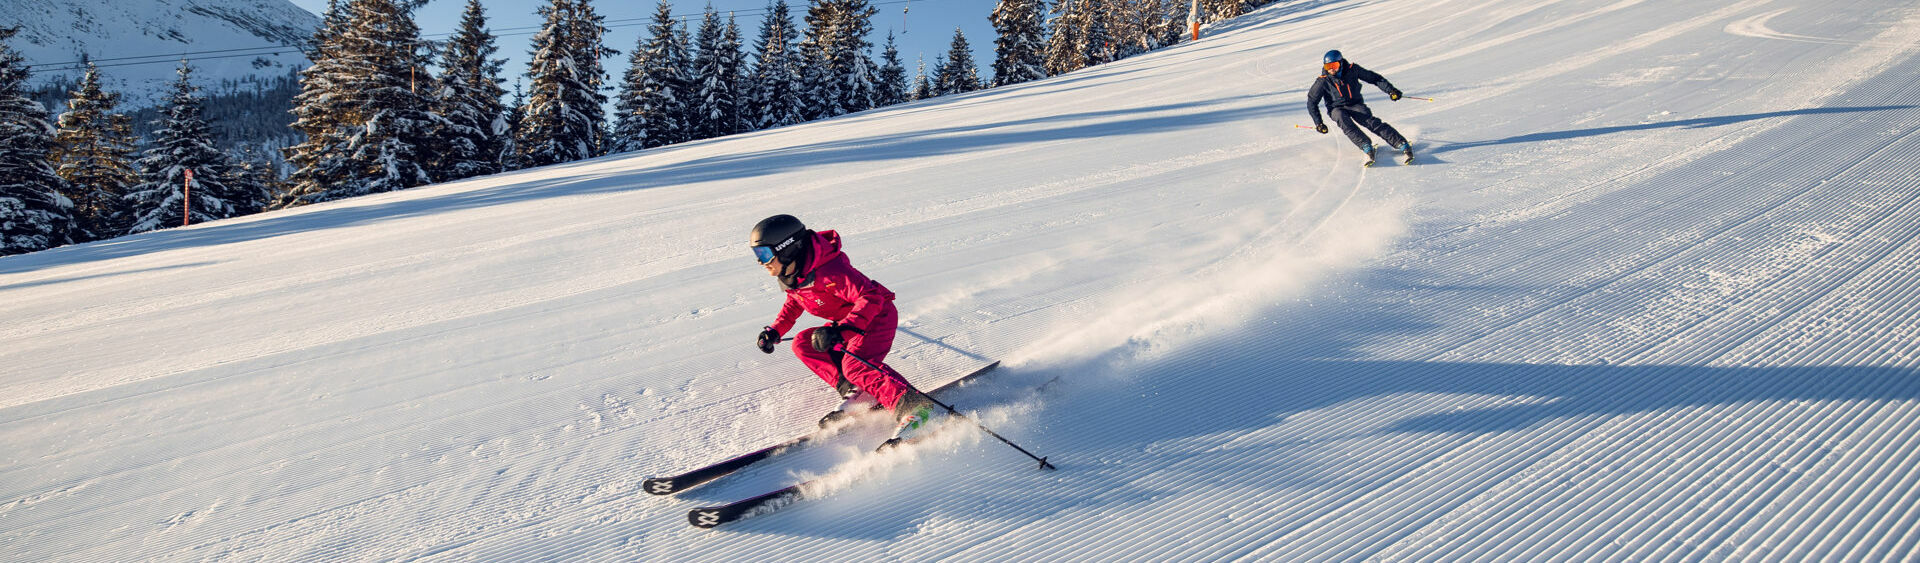 Bei strahlendem Wetter genießen zwei Skifahrer ihren Tag bei den Hochalmliften Christlum in Achenkirch am Achensee.